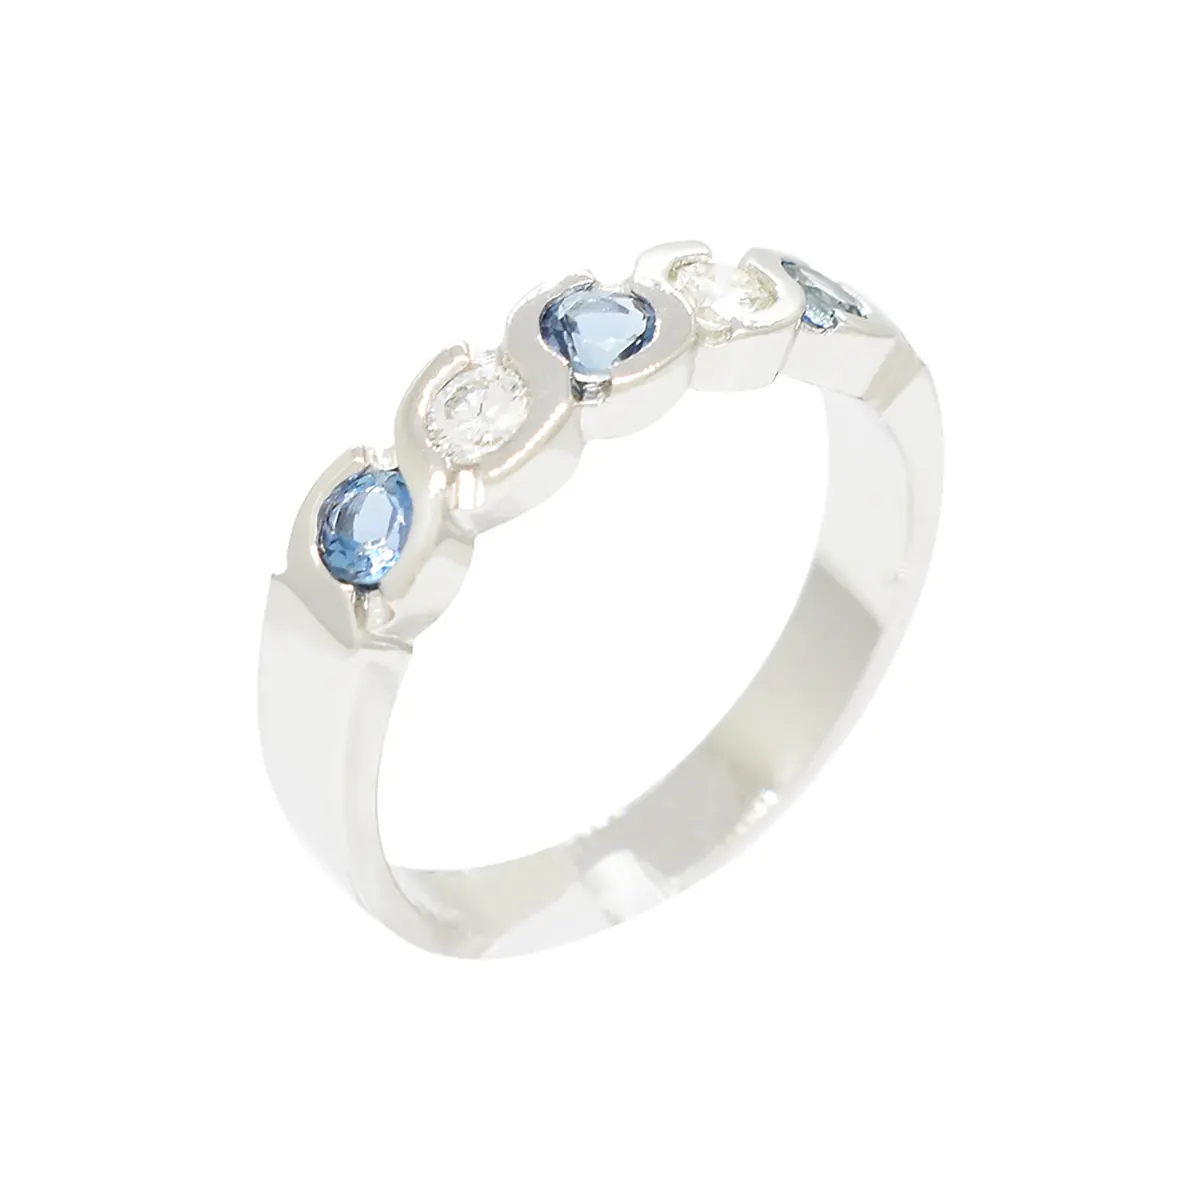 Aquamarine and Diamond Wedding Ring Band in 18K White Gold Bezel Setting 